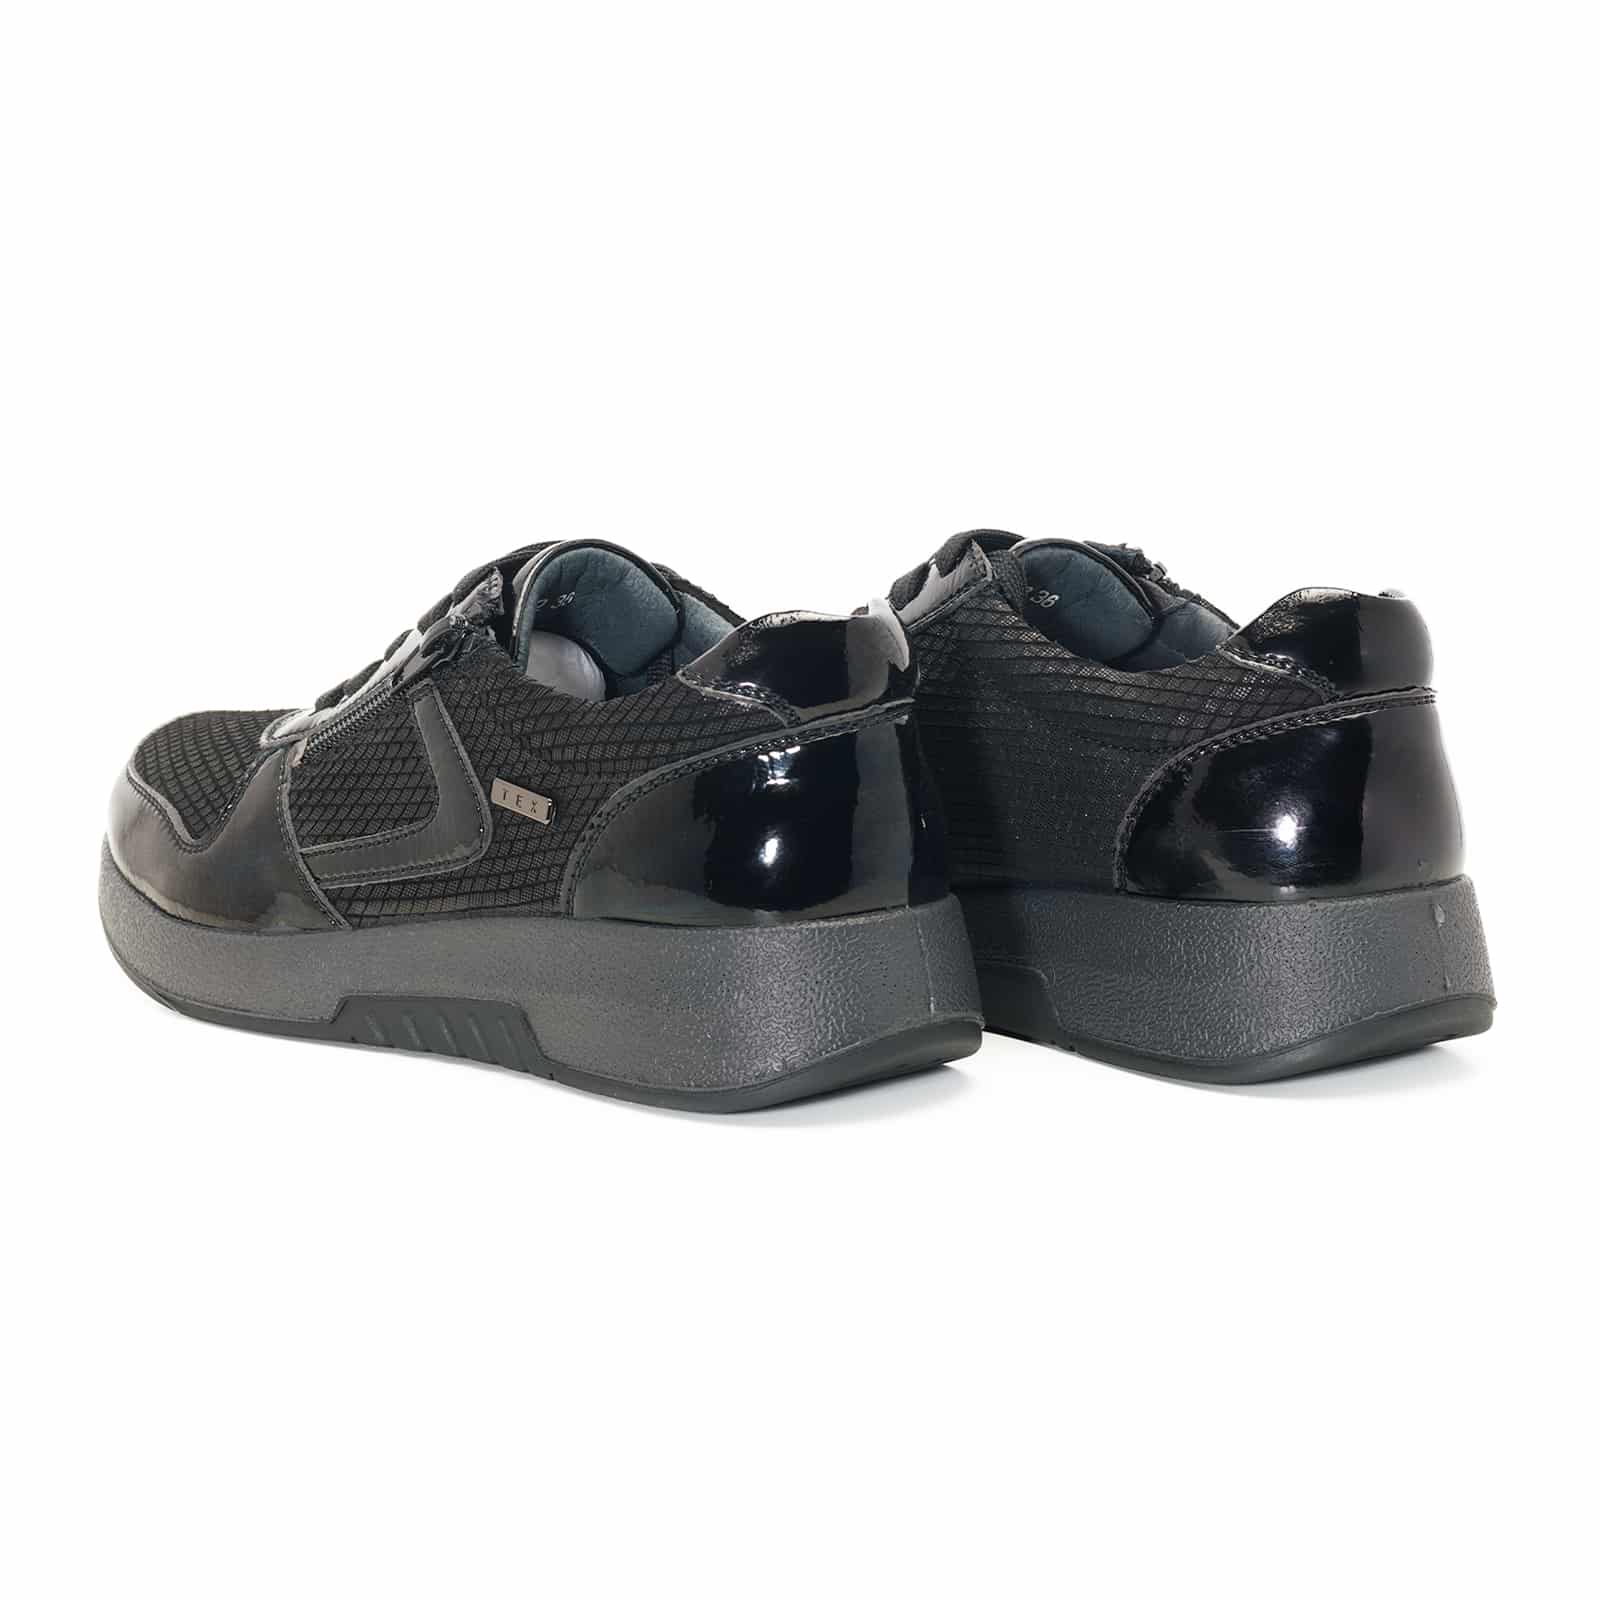 zapato mujer gComfort negro cremallera 9